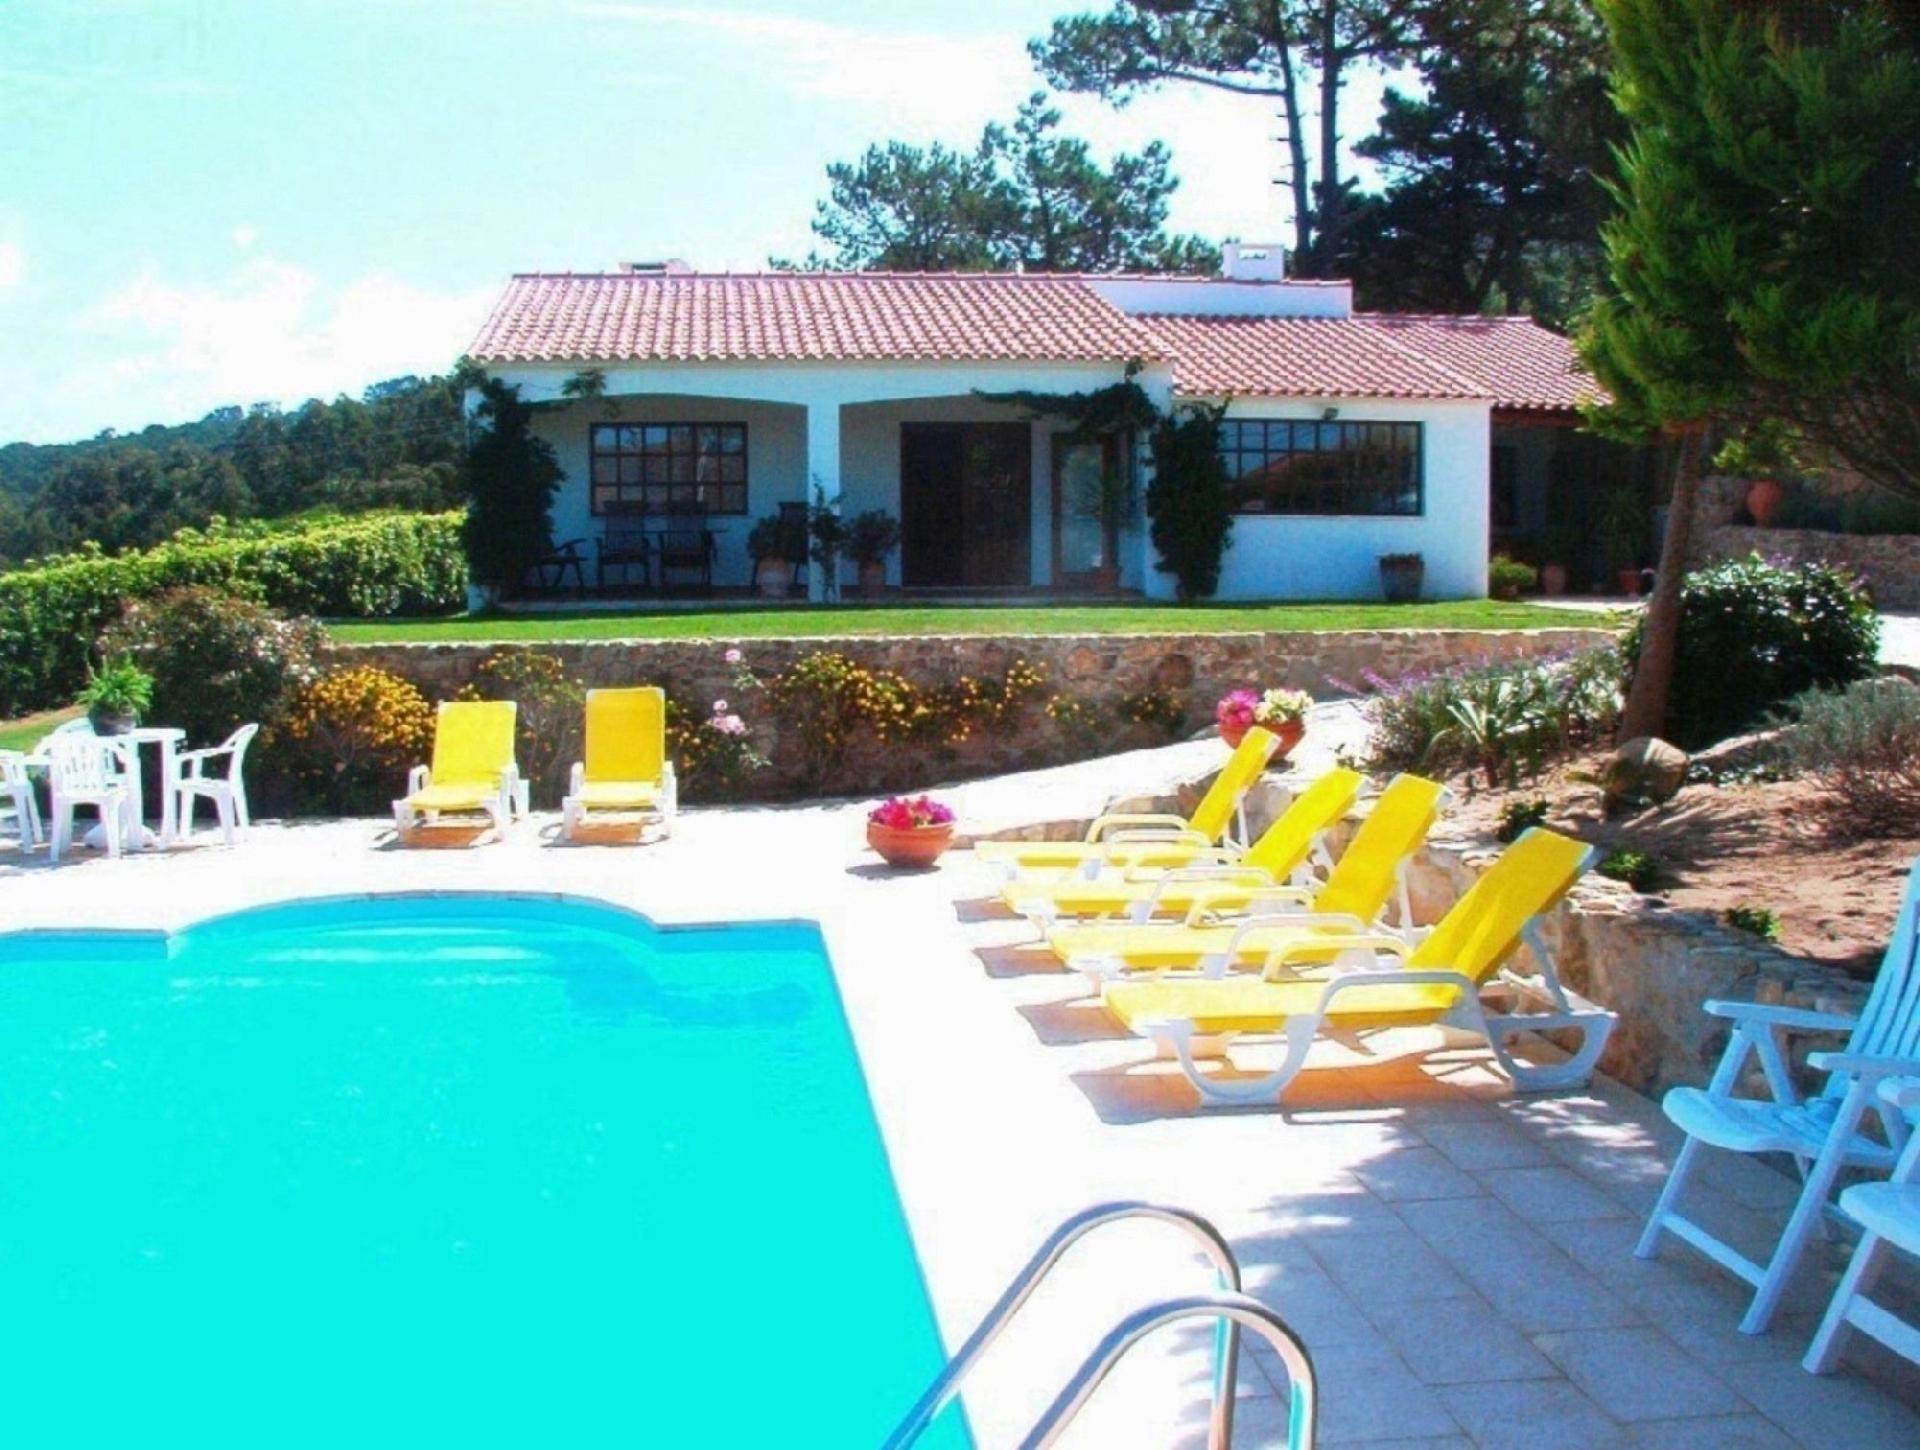 Ferienhaus in Colares mit Beheiztem Pool Ferienhaus in Portugal